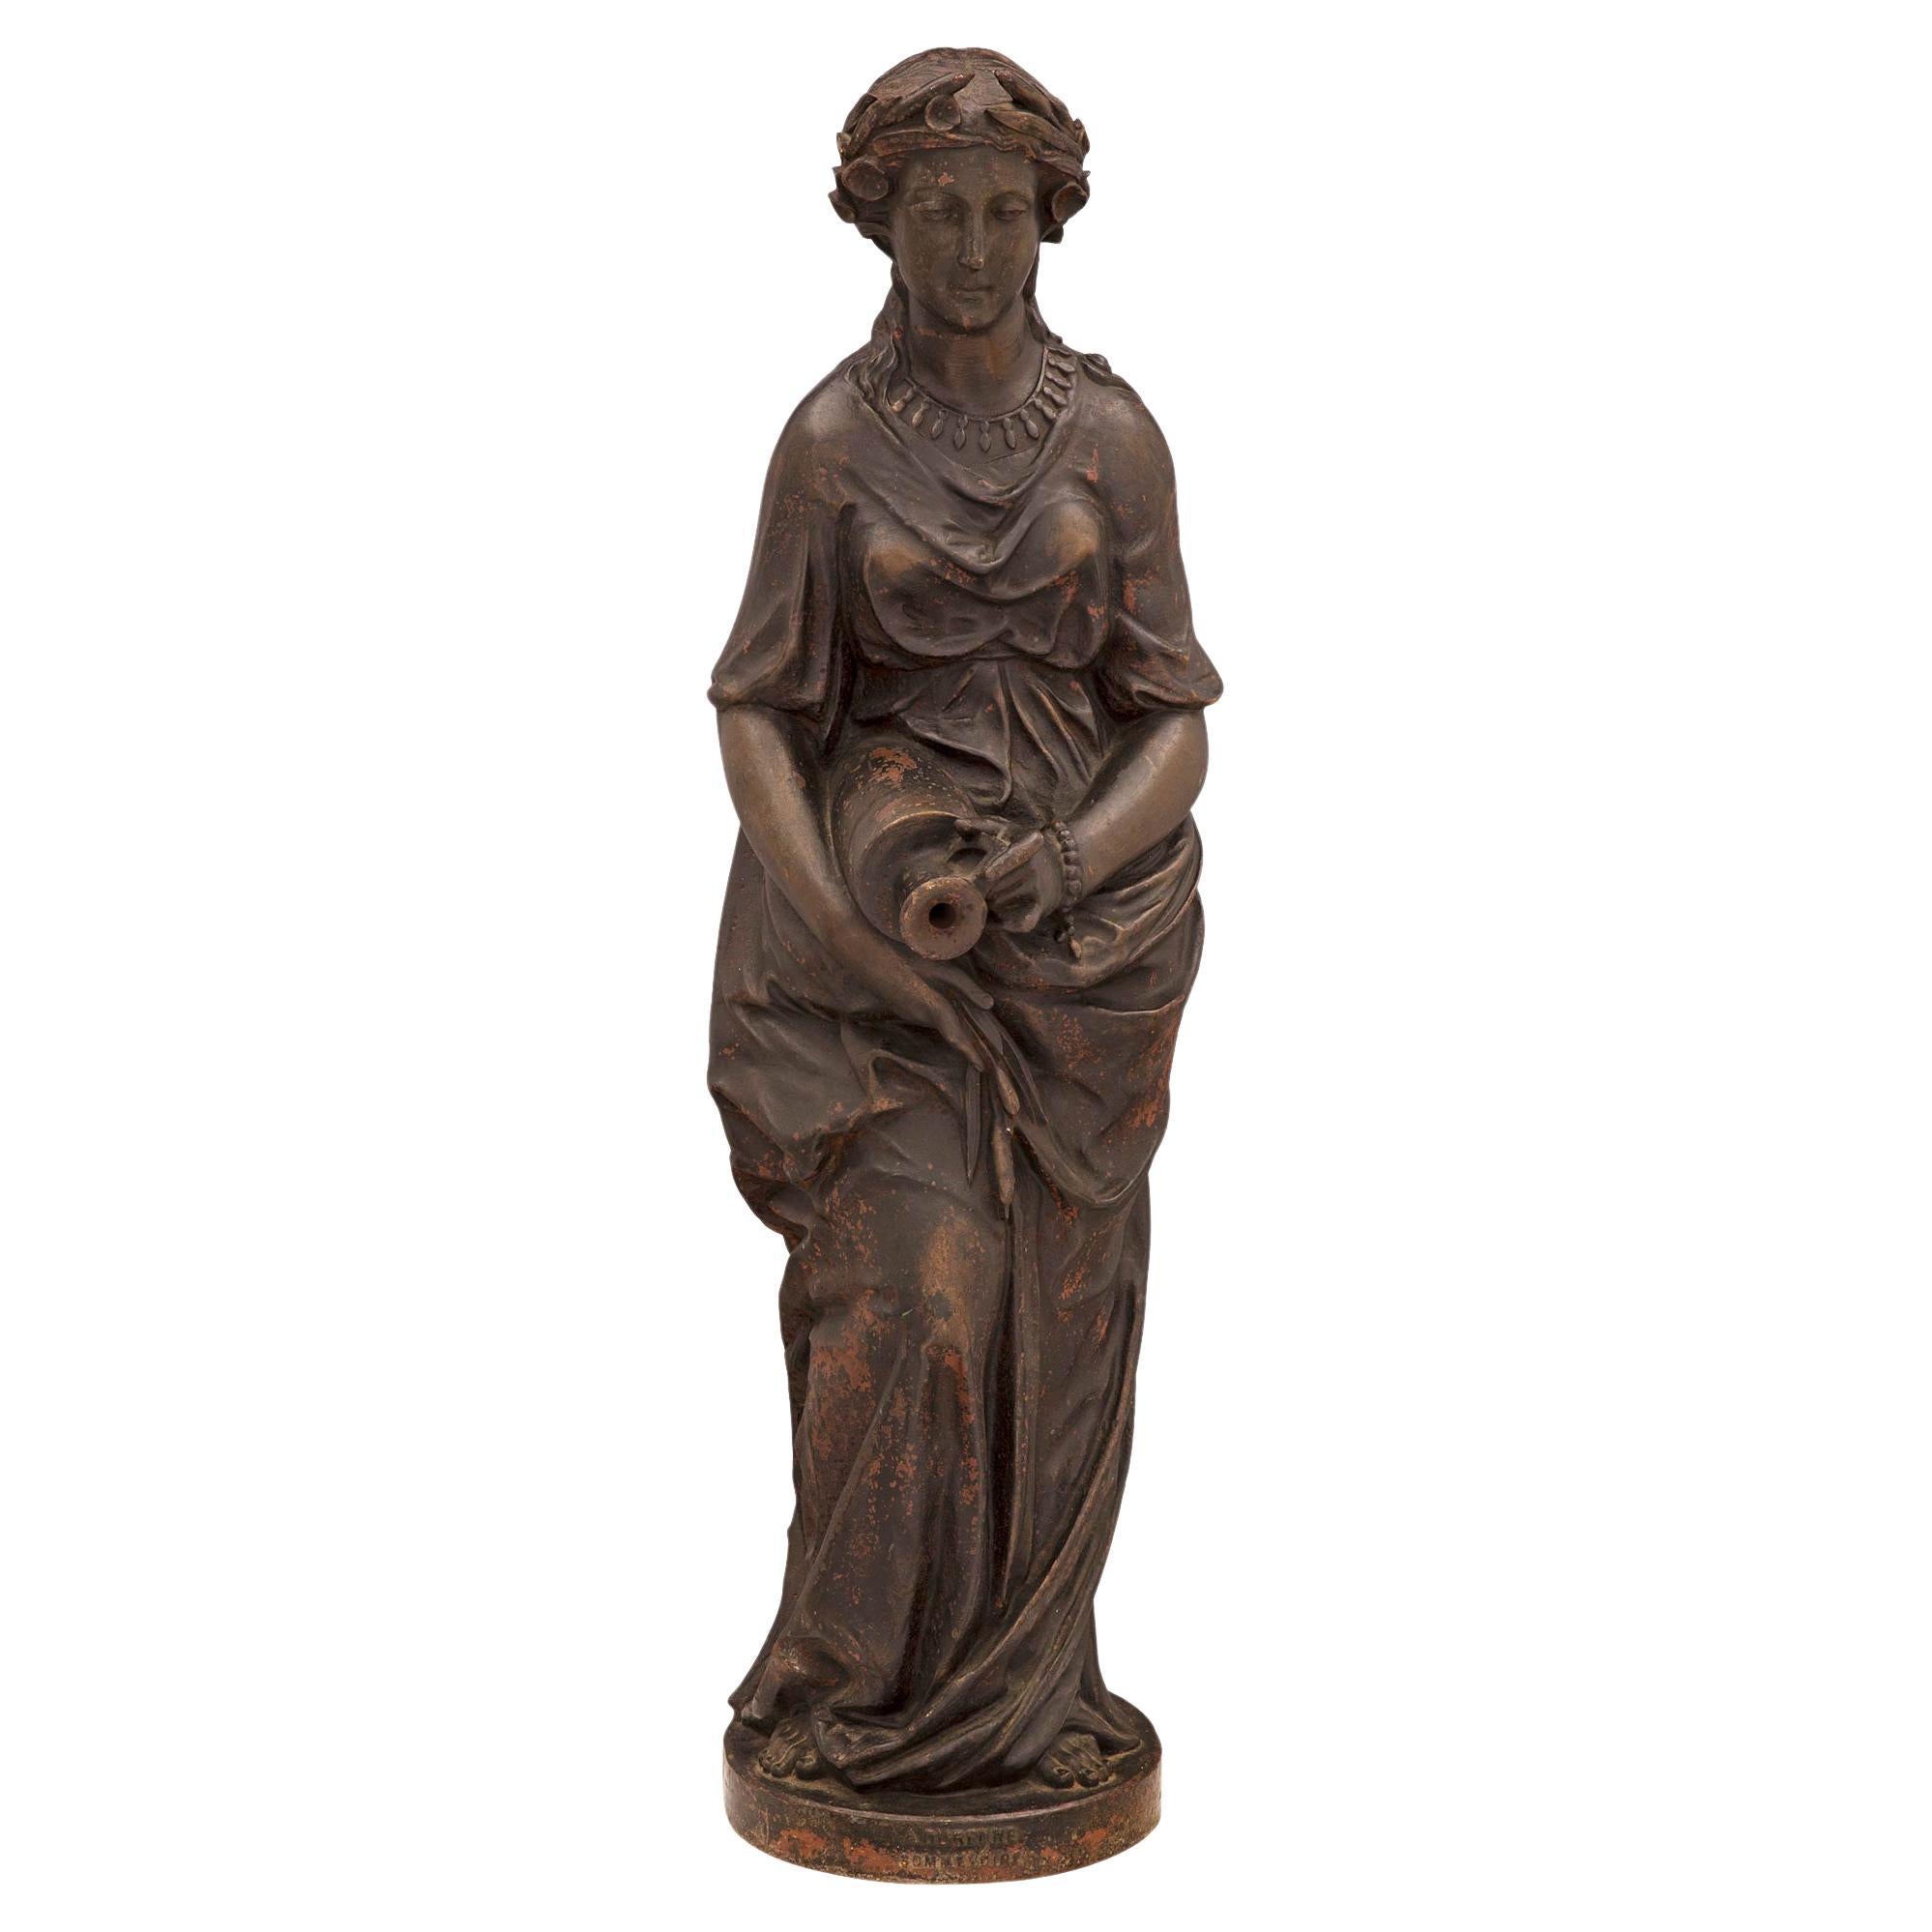 Wunderschöner französischer Brunnen aus Gusseisen aus dem 19. Jahrhundert mit einer Jungfrau, signiert A. Durenne, Sommevoire. Der Brunnen wird durch einen runden Sockel erhöht, auf dem die Unterschrift zu sehen ist. Oben ist ein wunderschönes